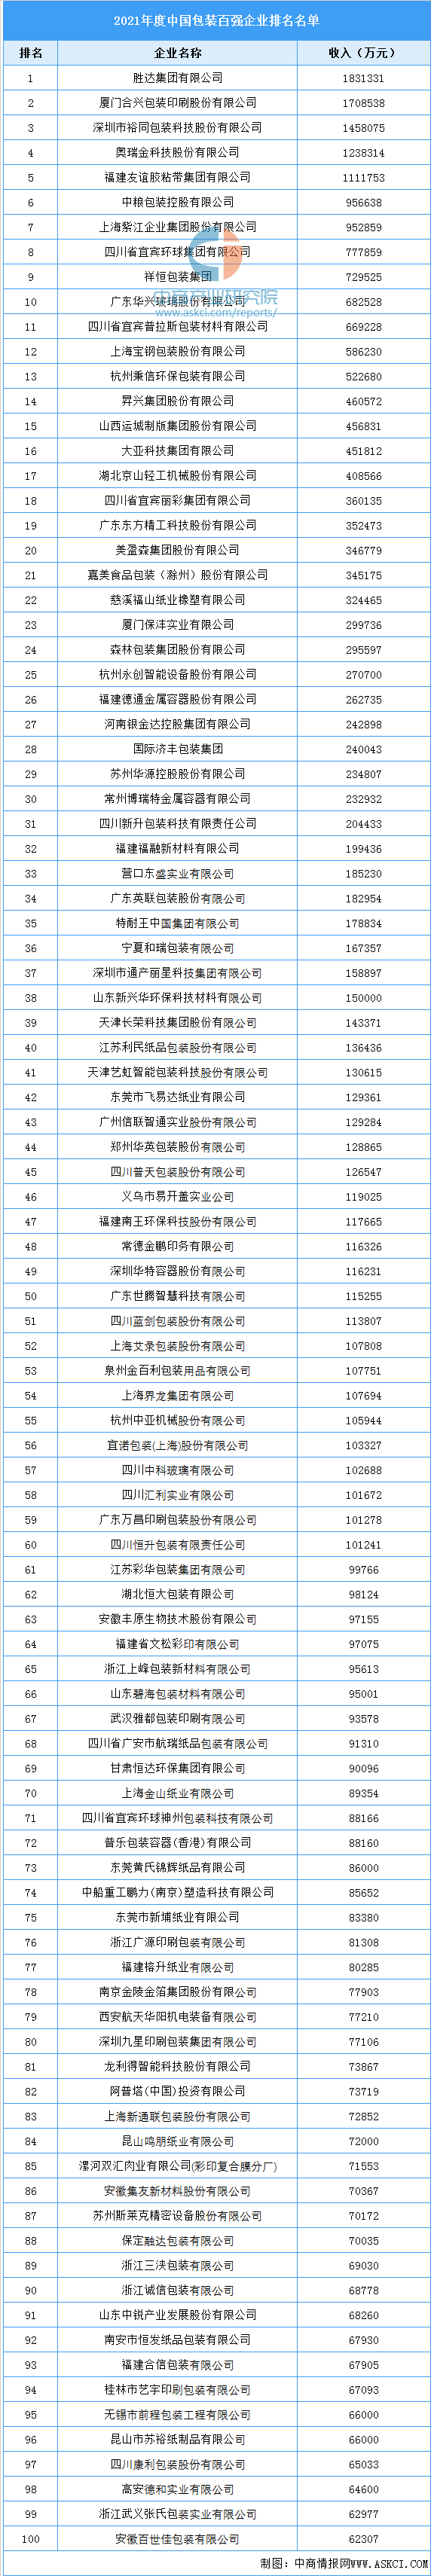 融资公司中国(国内融资公司排名)